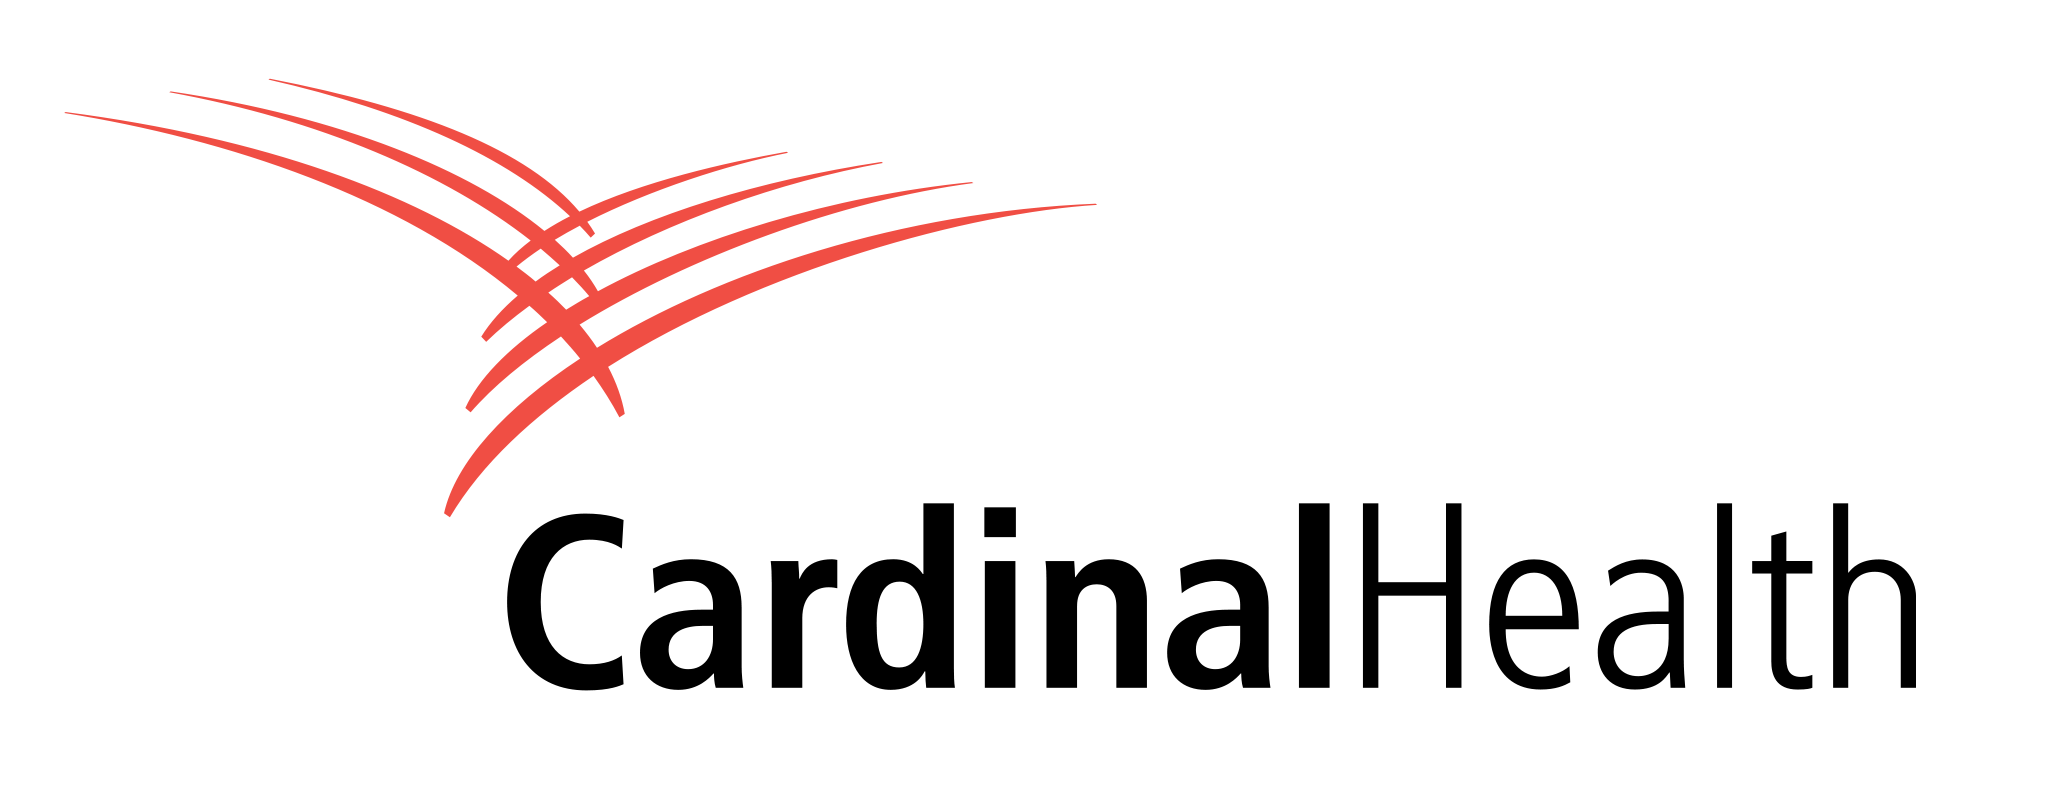 Cardinal Health Logo PNG Image